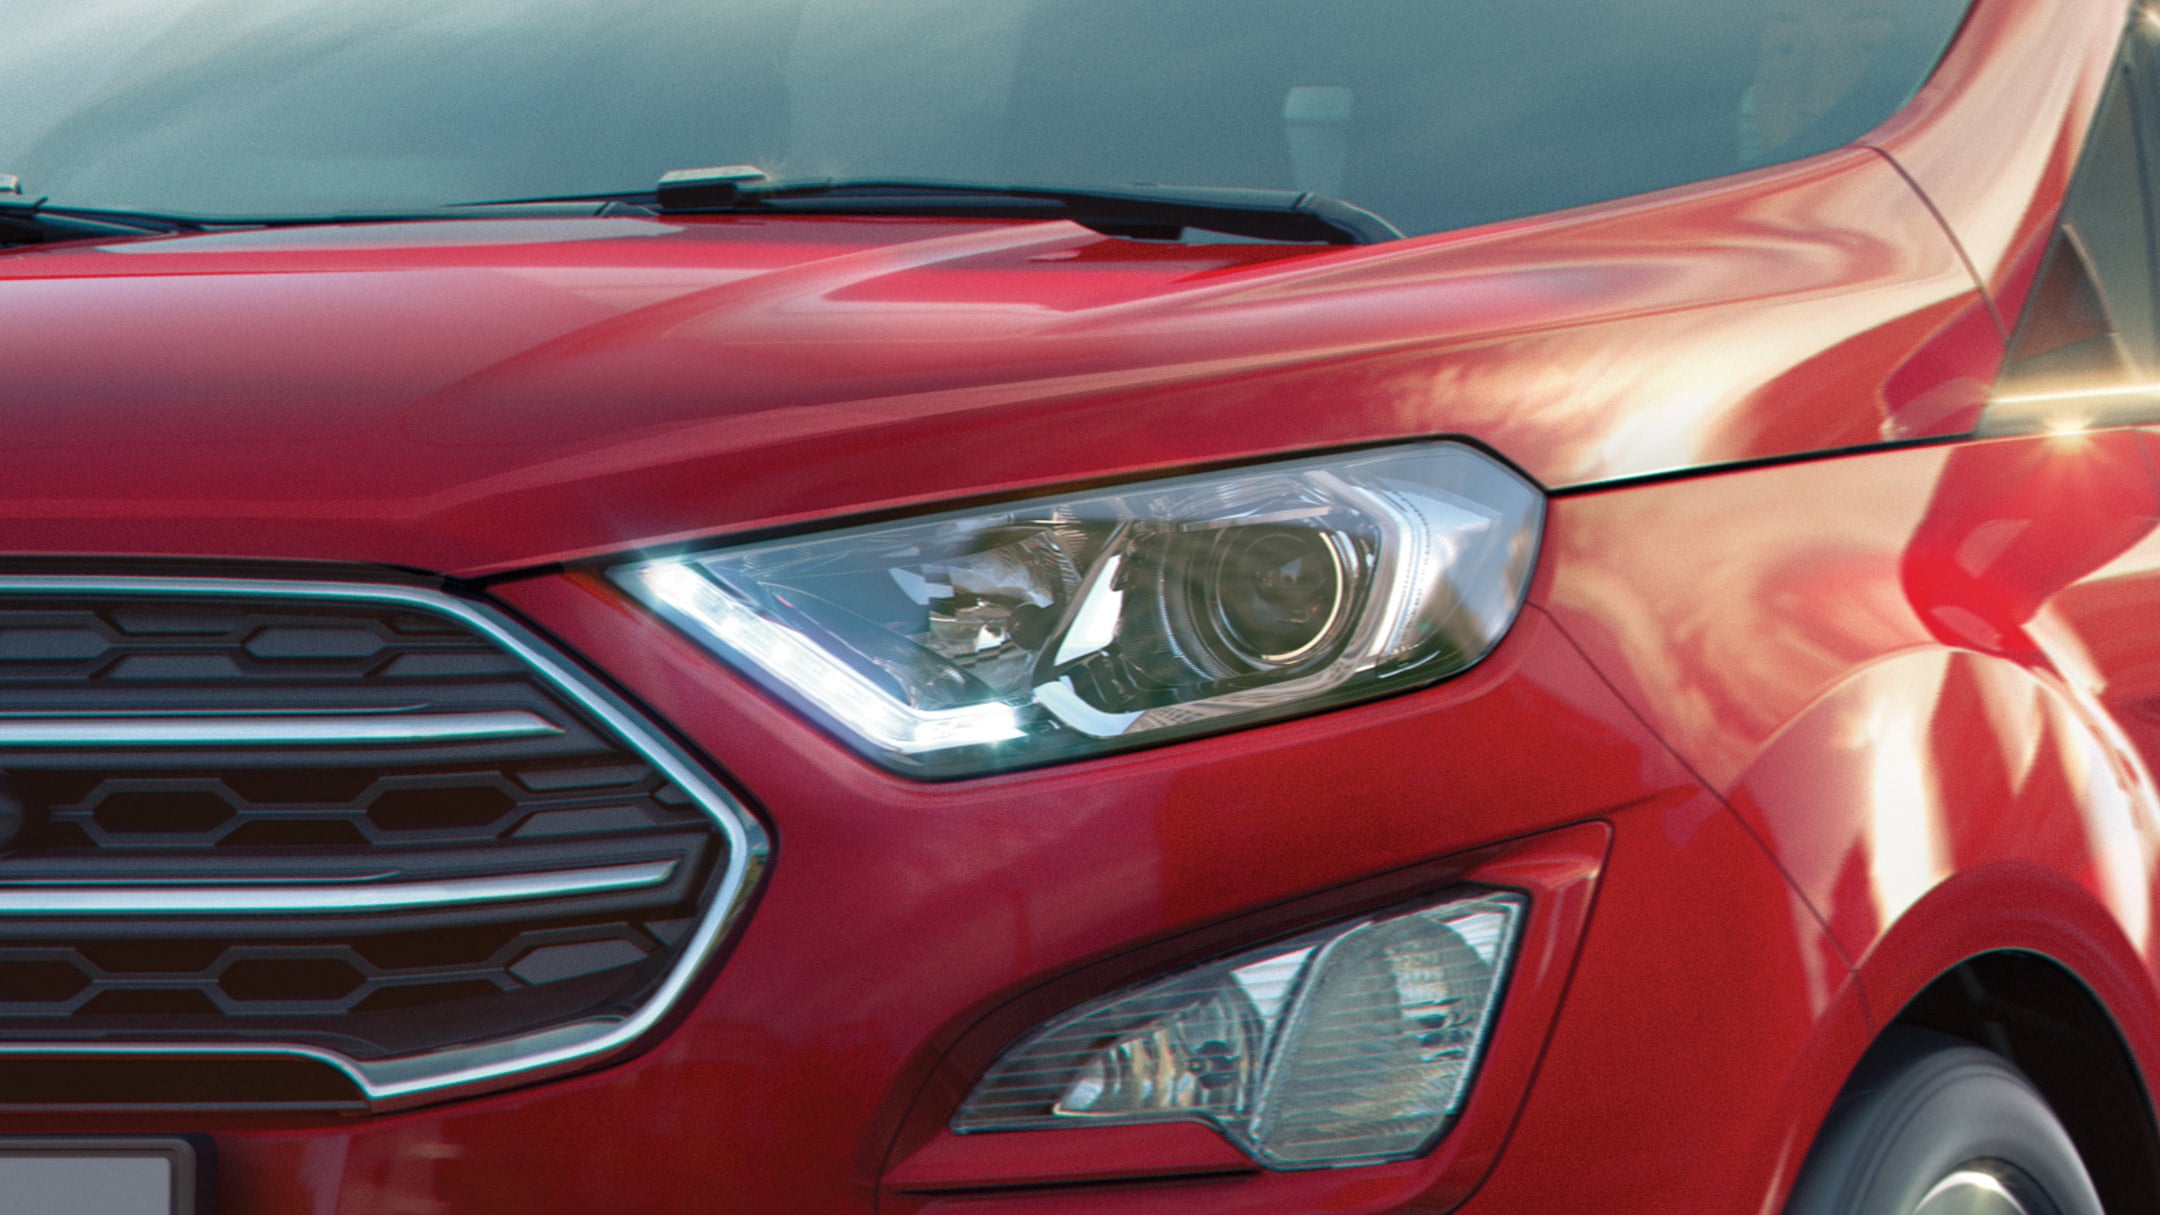 Ford Ecosport in Rot. Detailansicht des Scheinwerfers